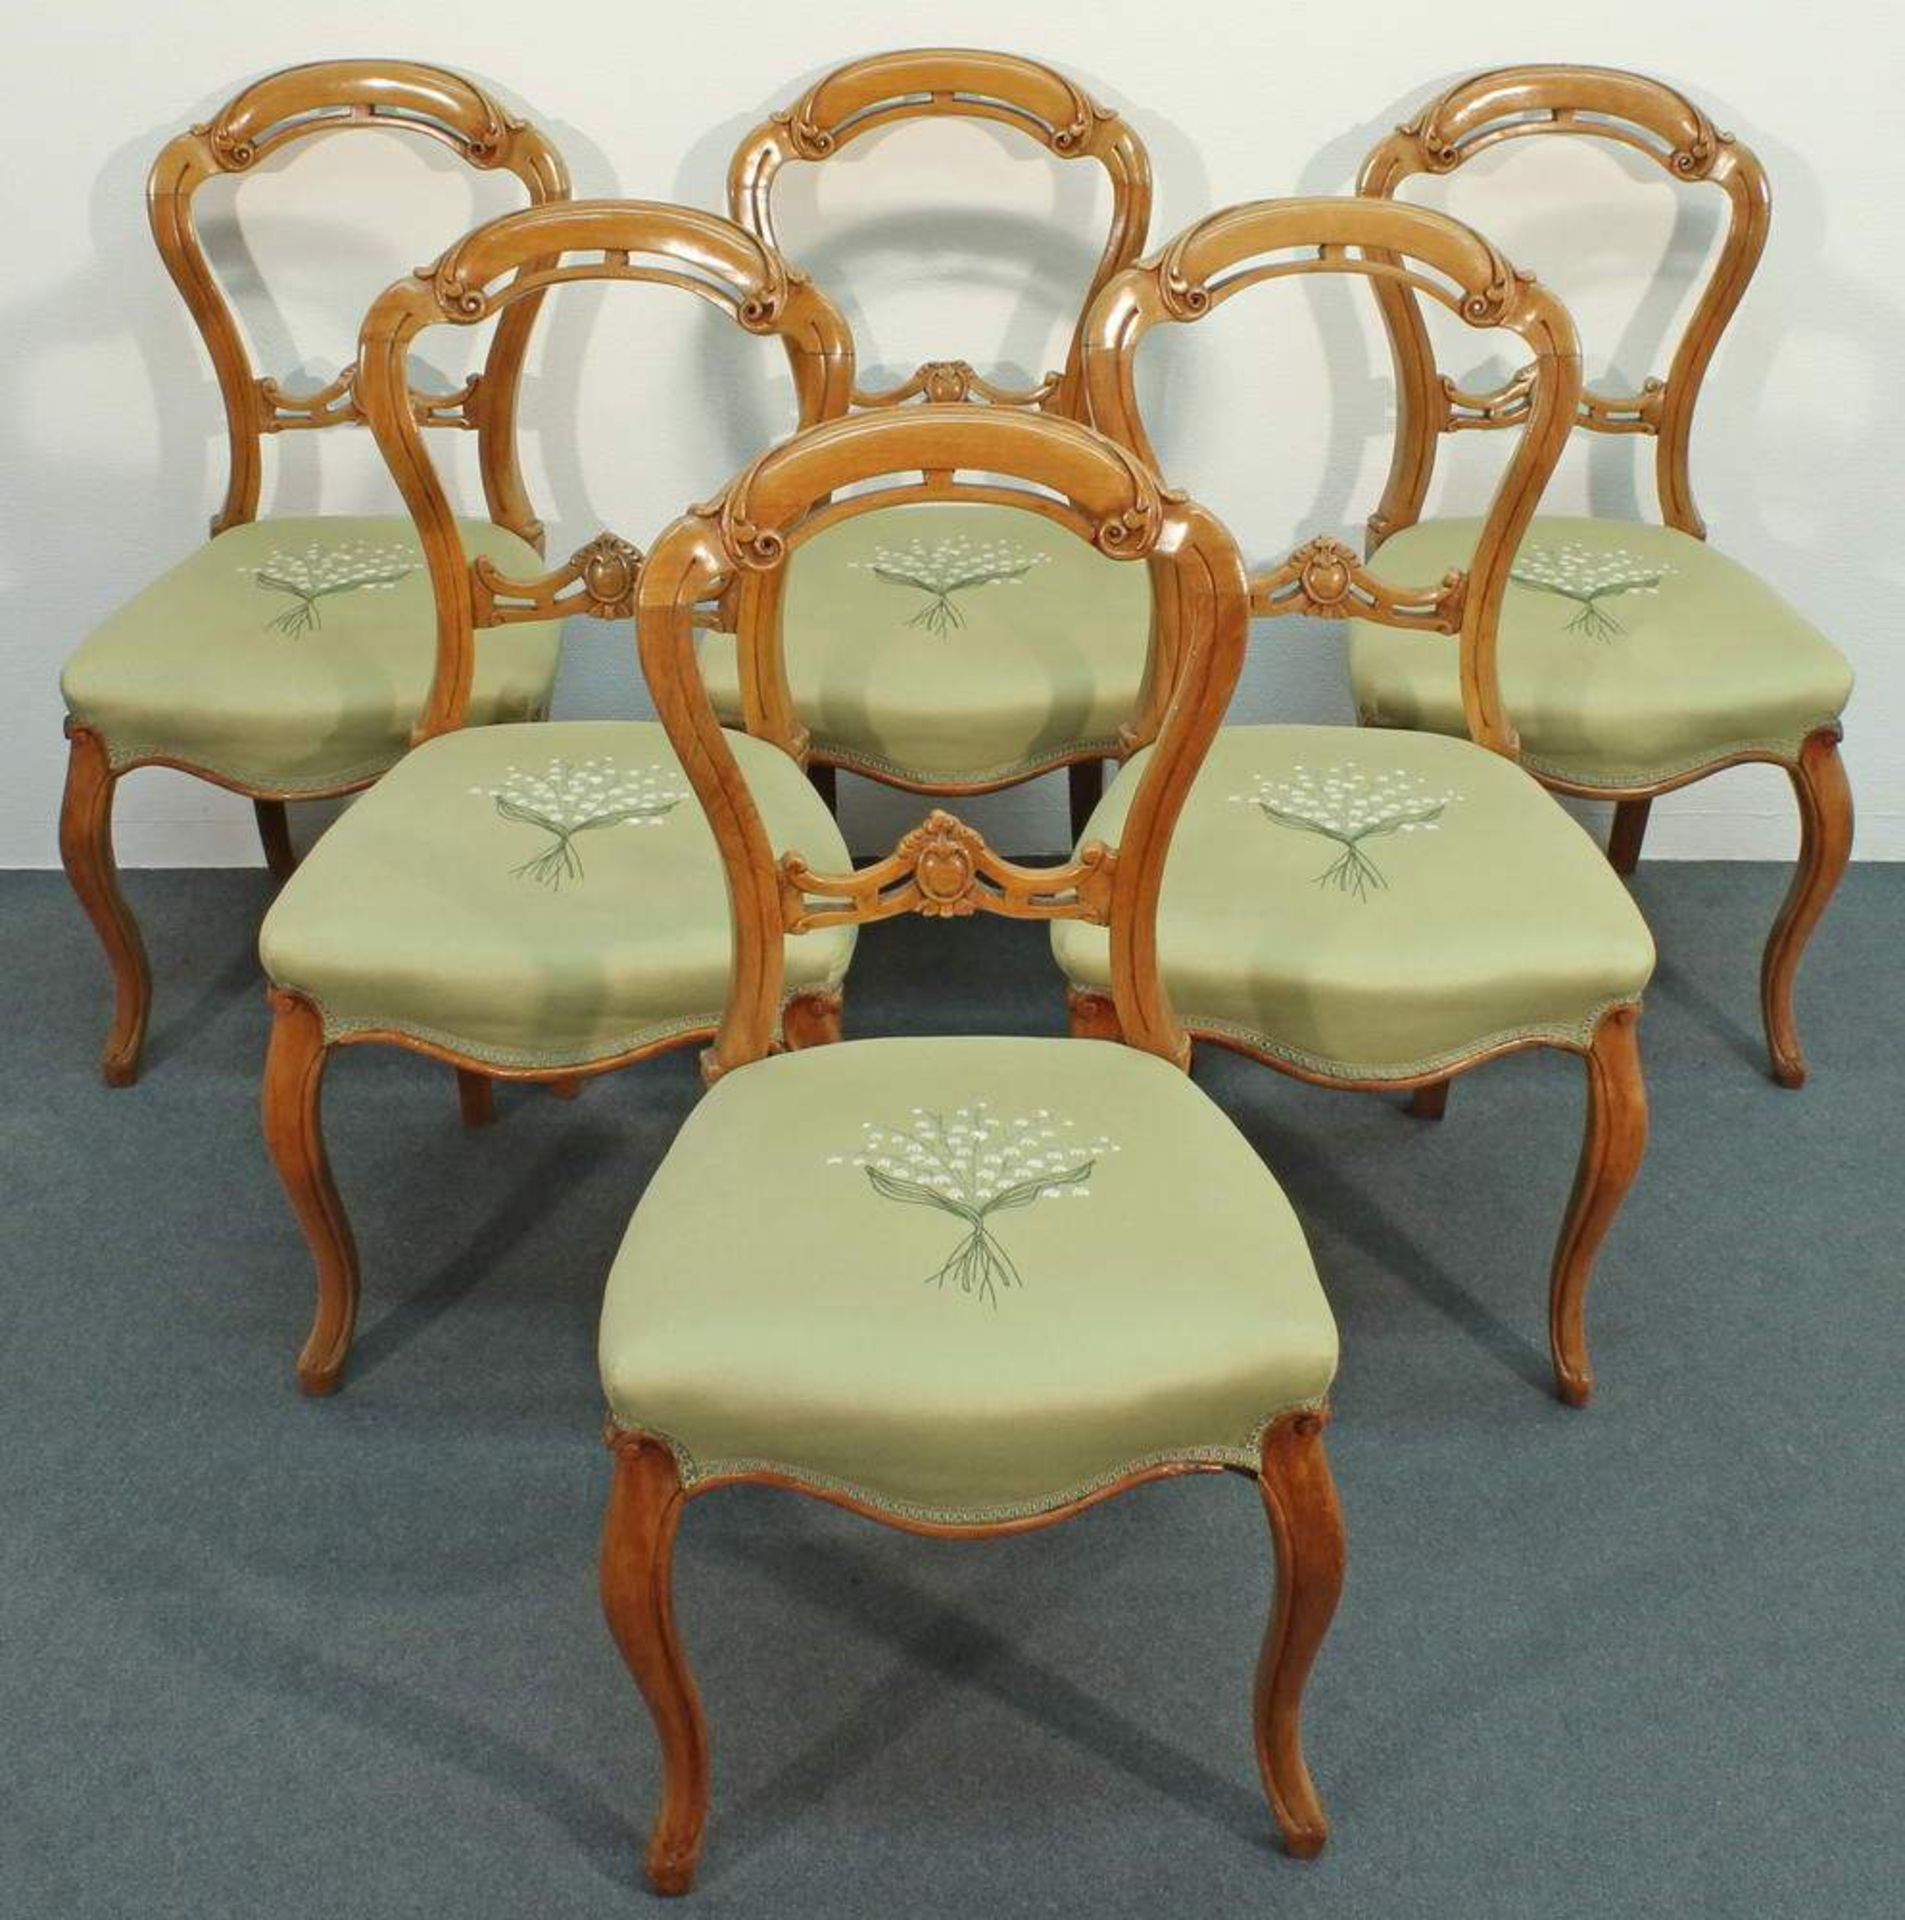 6 Stühle, England, 19. Jh., Nussholz, Sitzpolster mit erneuertem Bezug